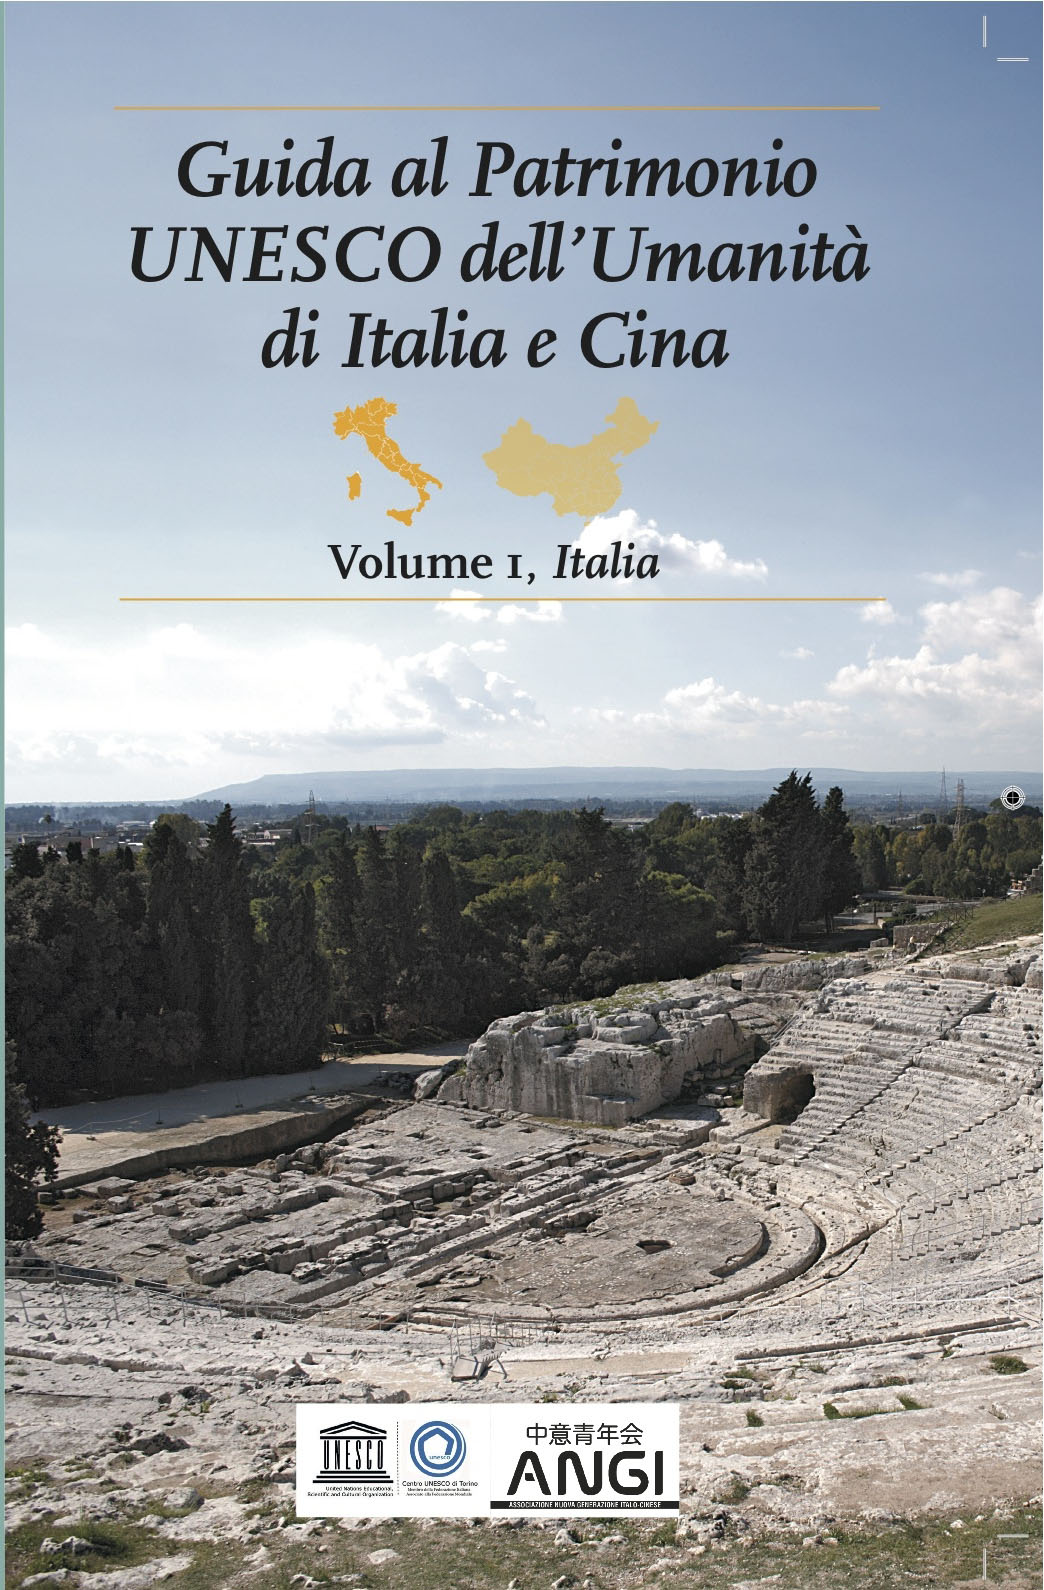 Guida al Patrimonio UNESCO dell’Umanità di Italia e Cina